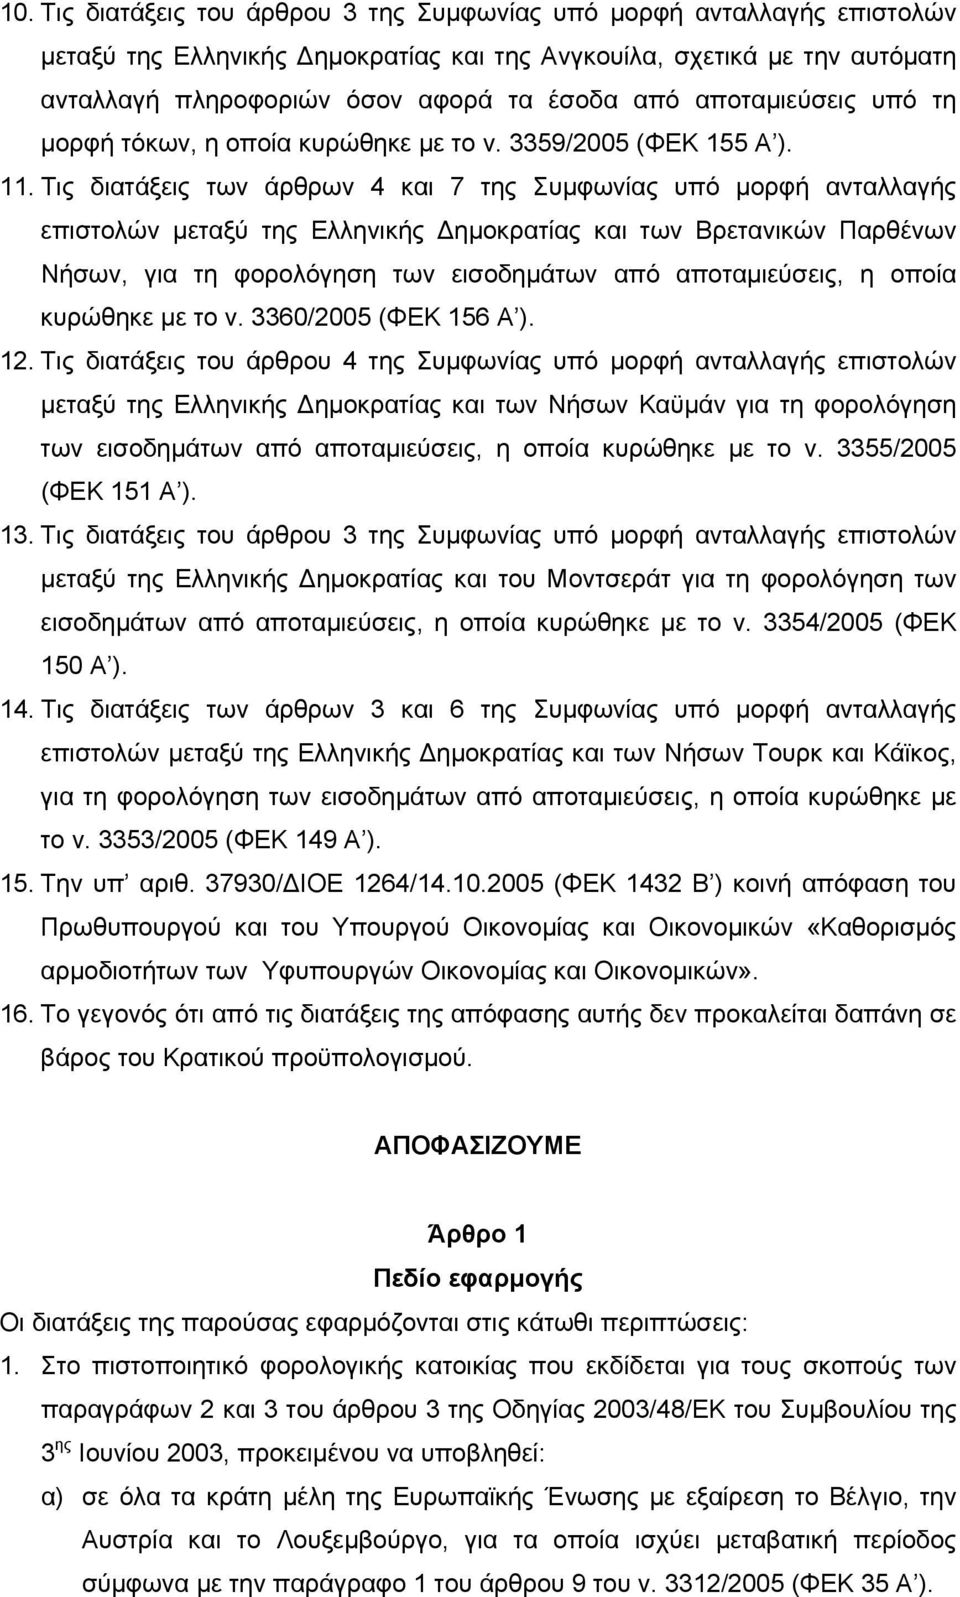 Τις διατάξεις των άρθρων 4 και 7 της Συμφωνίας υπό μορφή ανταλλαγής επιστολών μεταξύ της Ελληνικής Δημοκρατίας και των Βρετανικών Παρθένων Νήσων, για τη φορολόγηση των εισοδημάτων από αποταμιεύσεις,